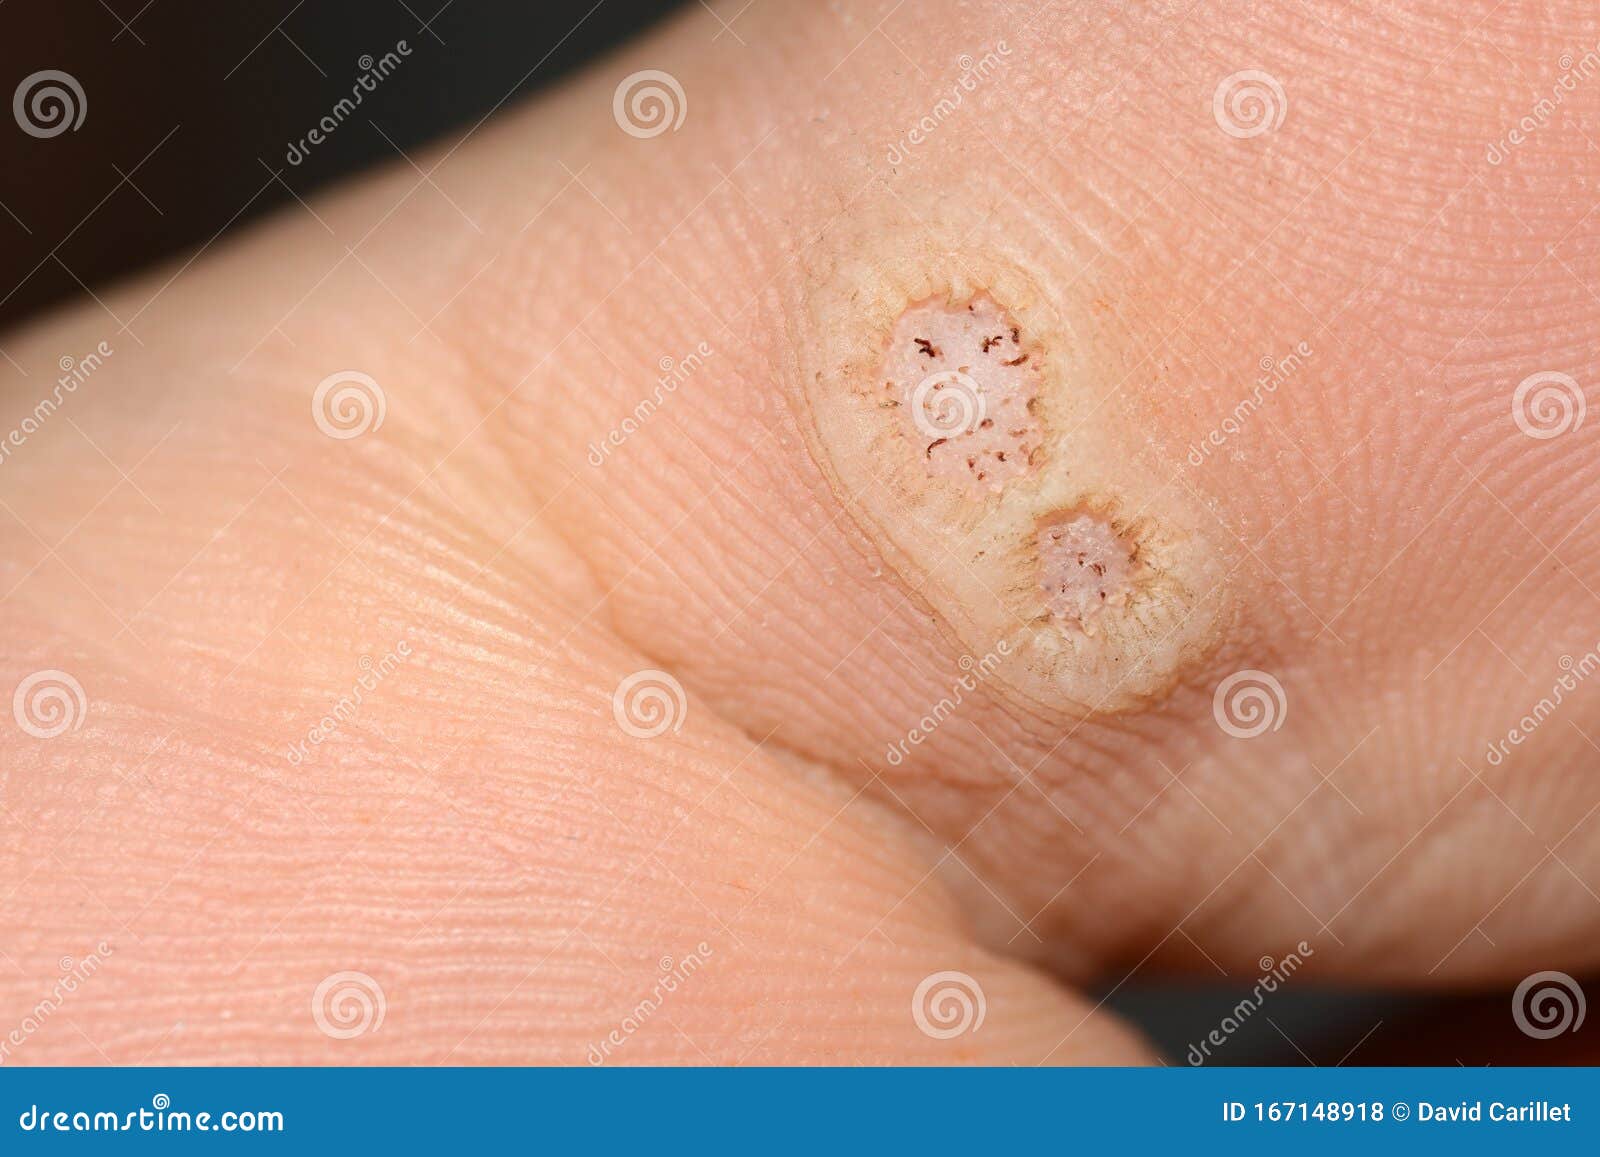 human papillomavirus feet)